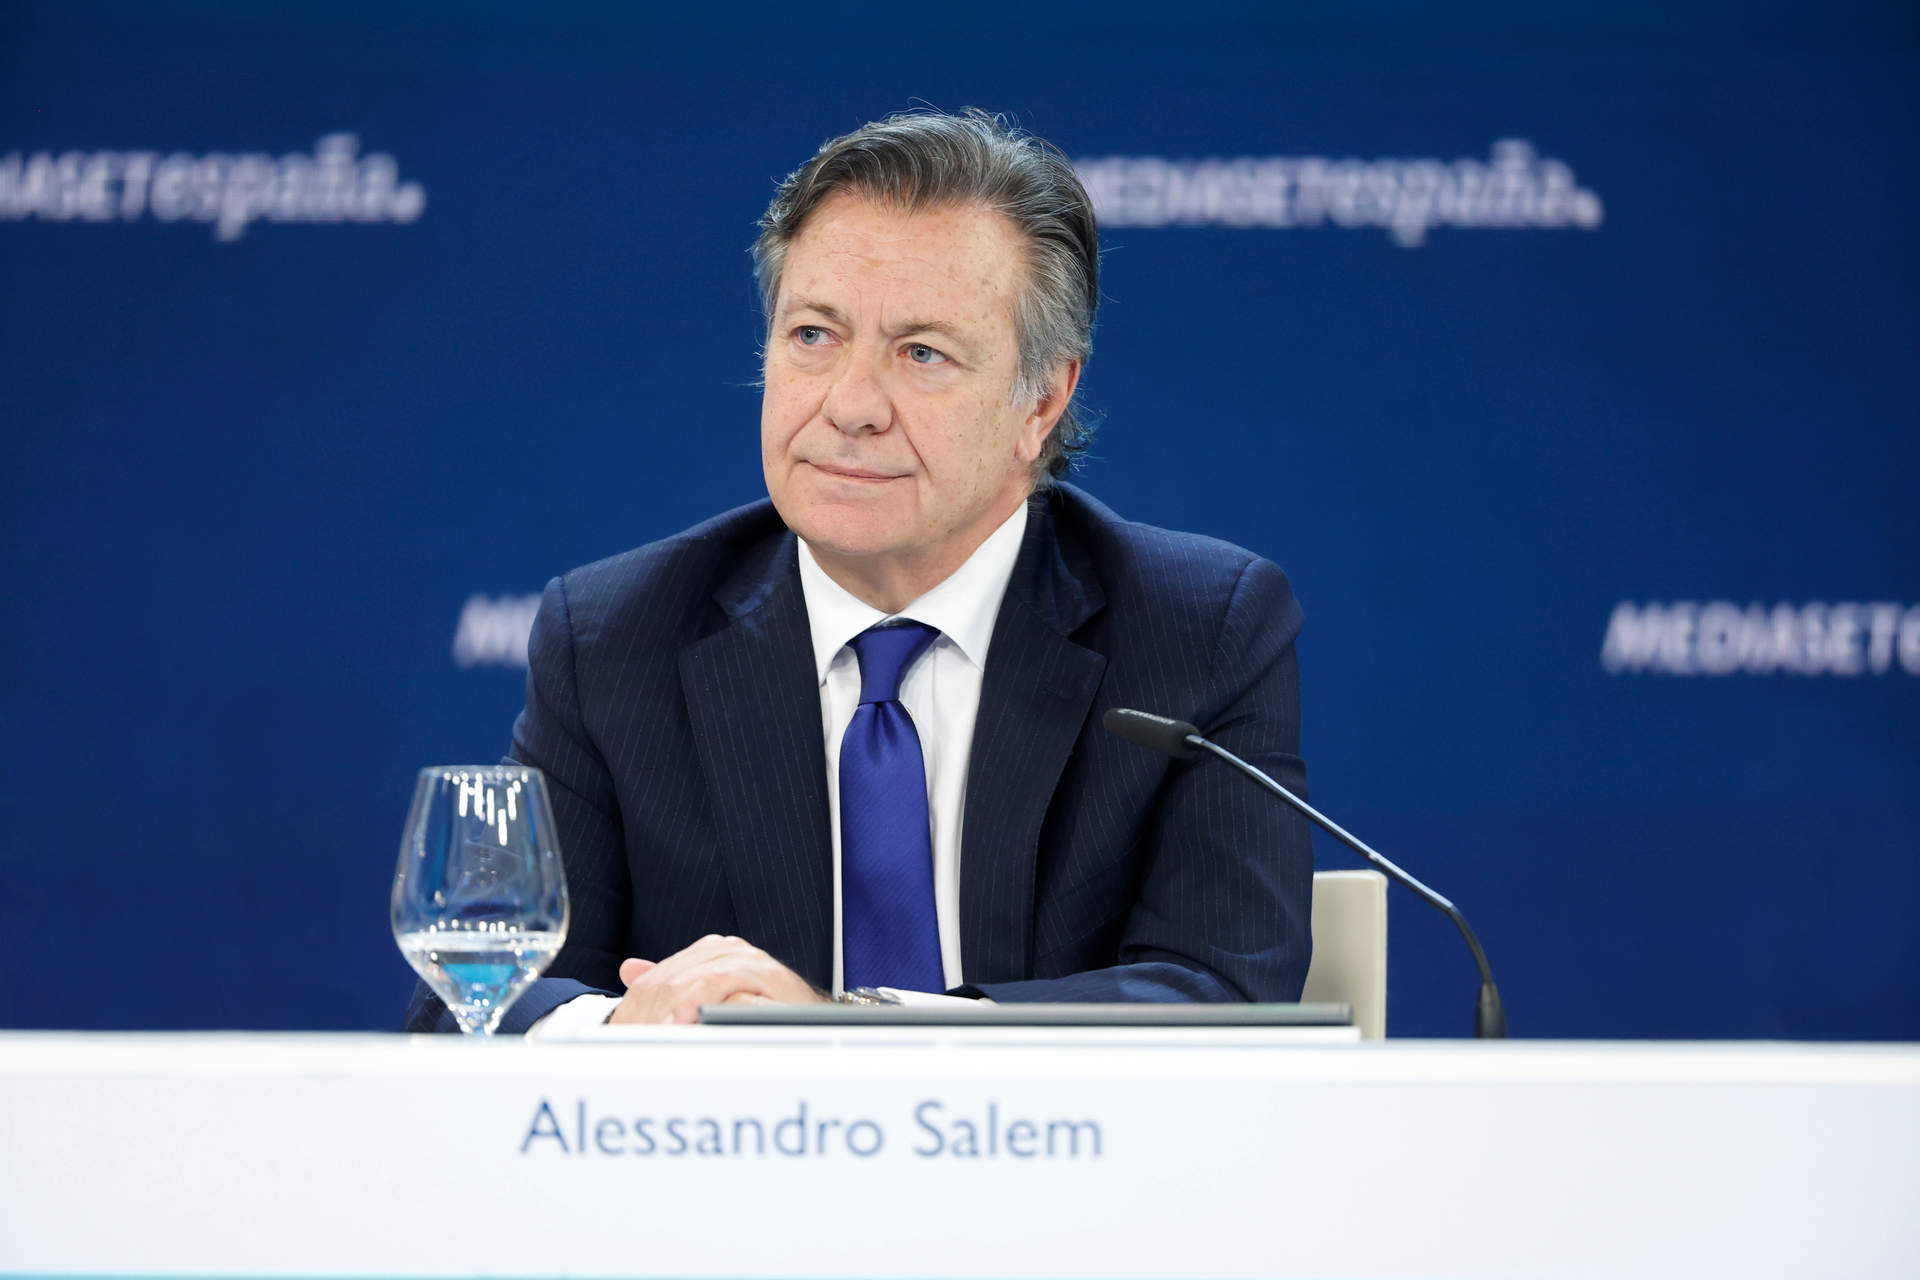 Alessandro Salem, el consejero delegado de Mediaset España.